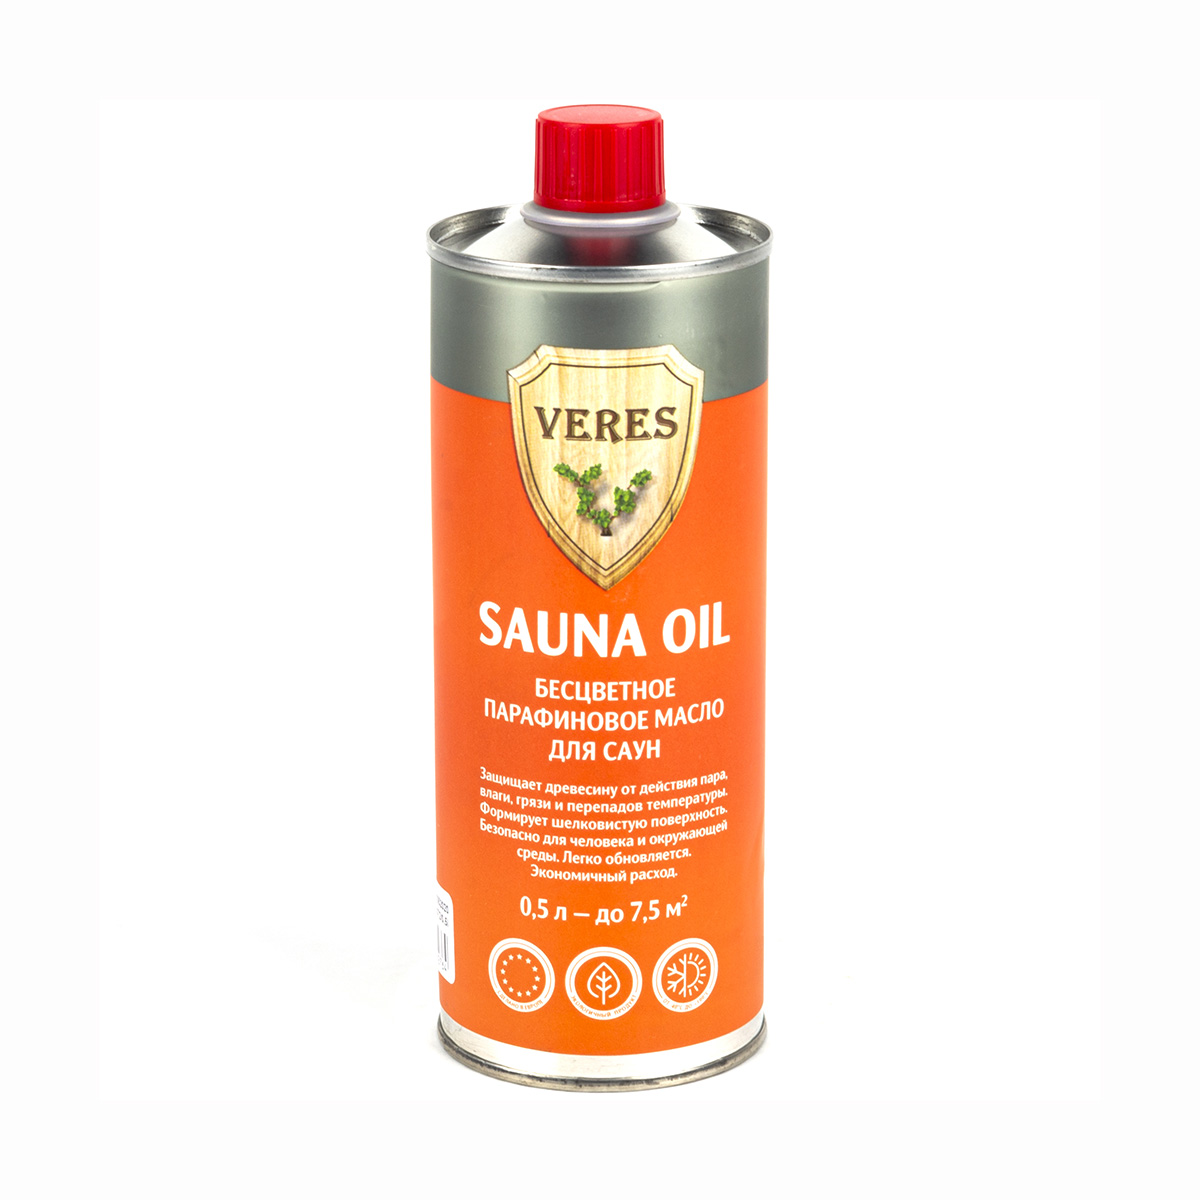 Верес масло для саун  "sauna oil"  0,5 л (1/6) "veres"